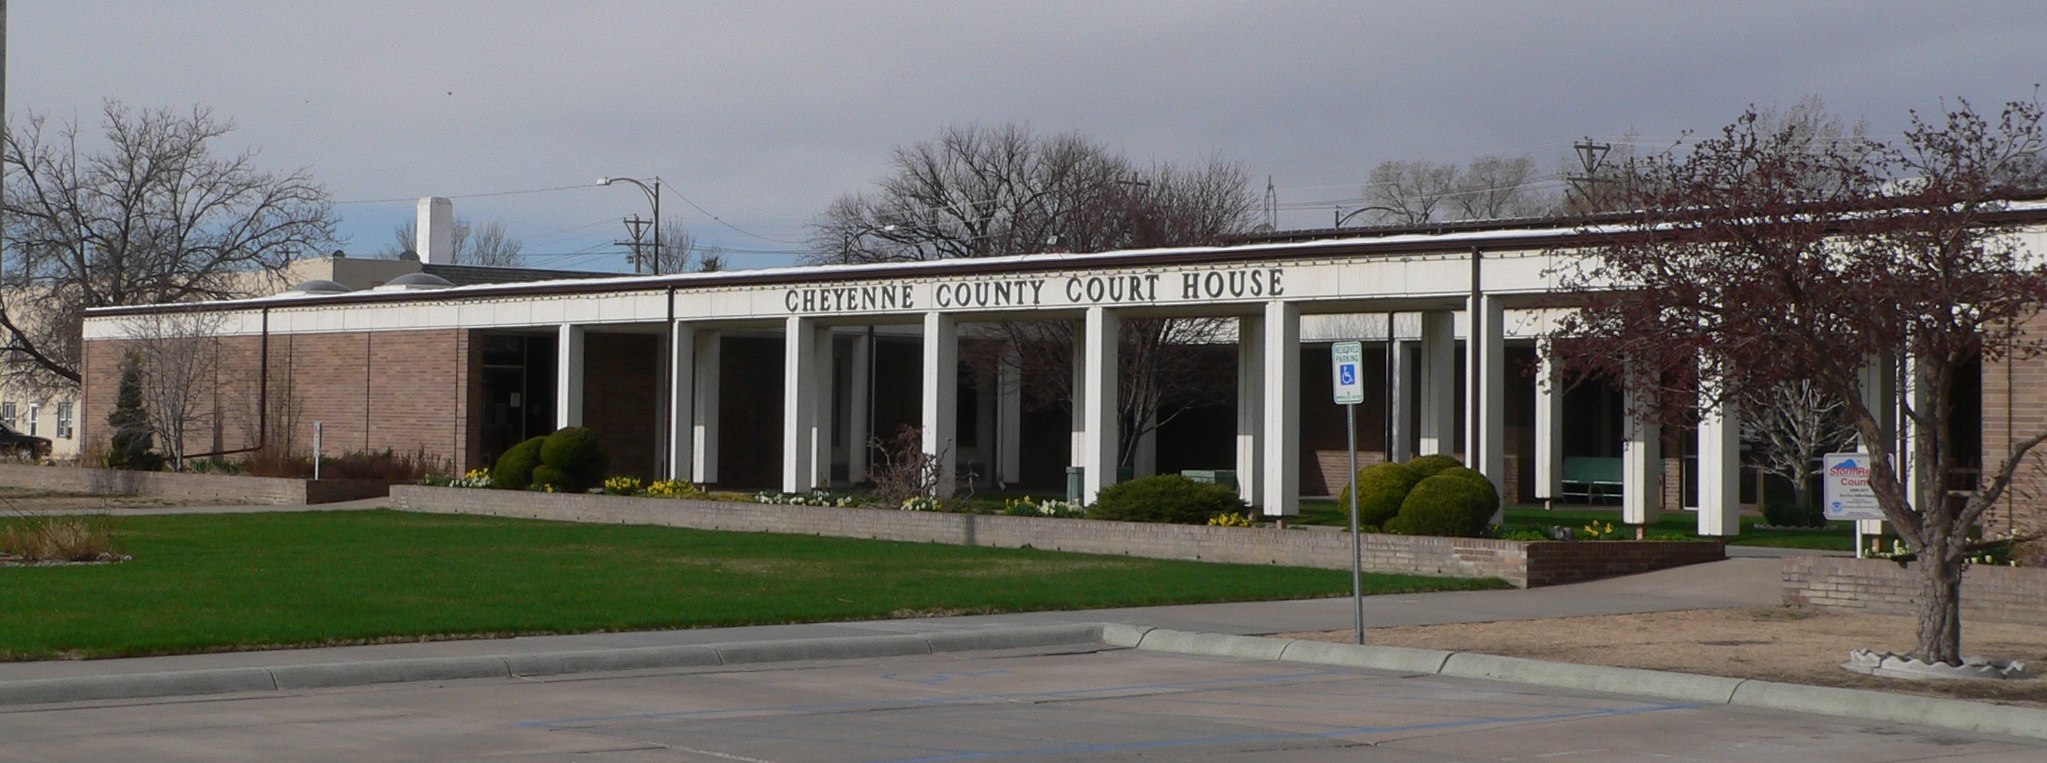 Cheyenne County, Nebraska courthouse 3